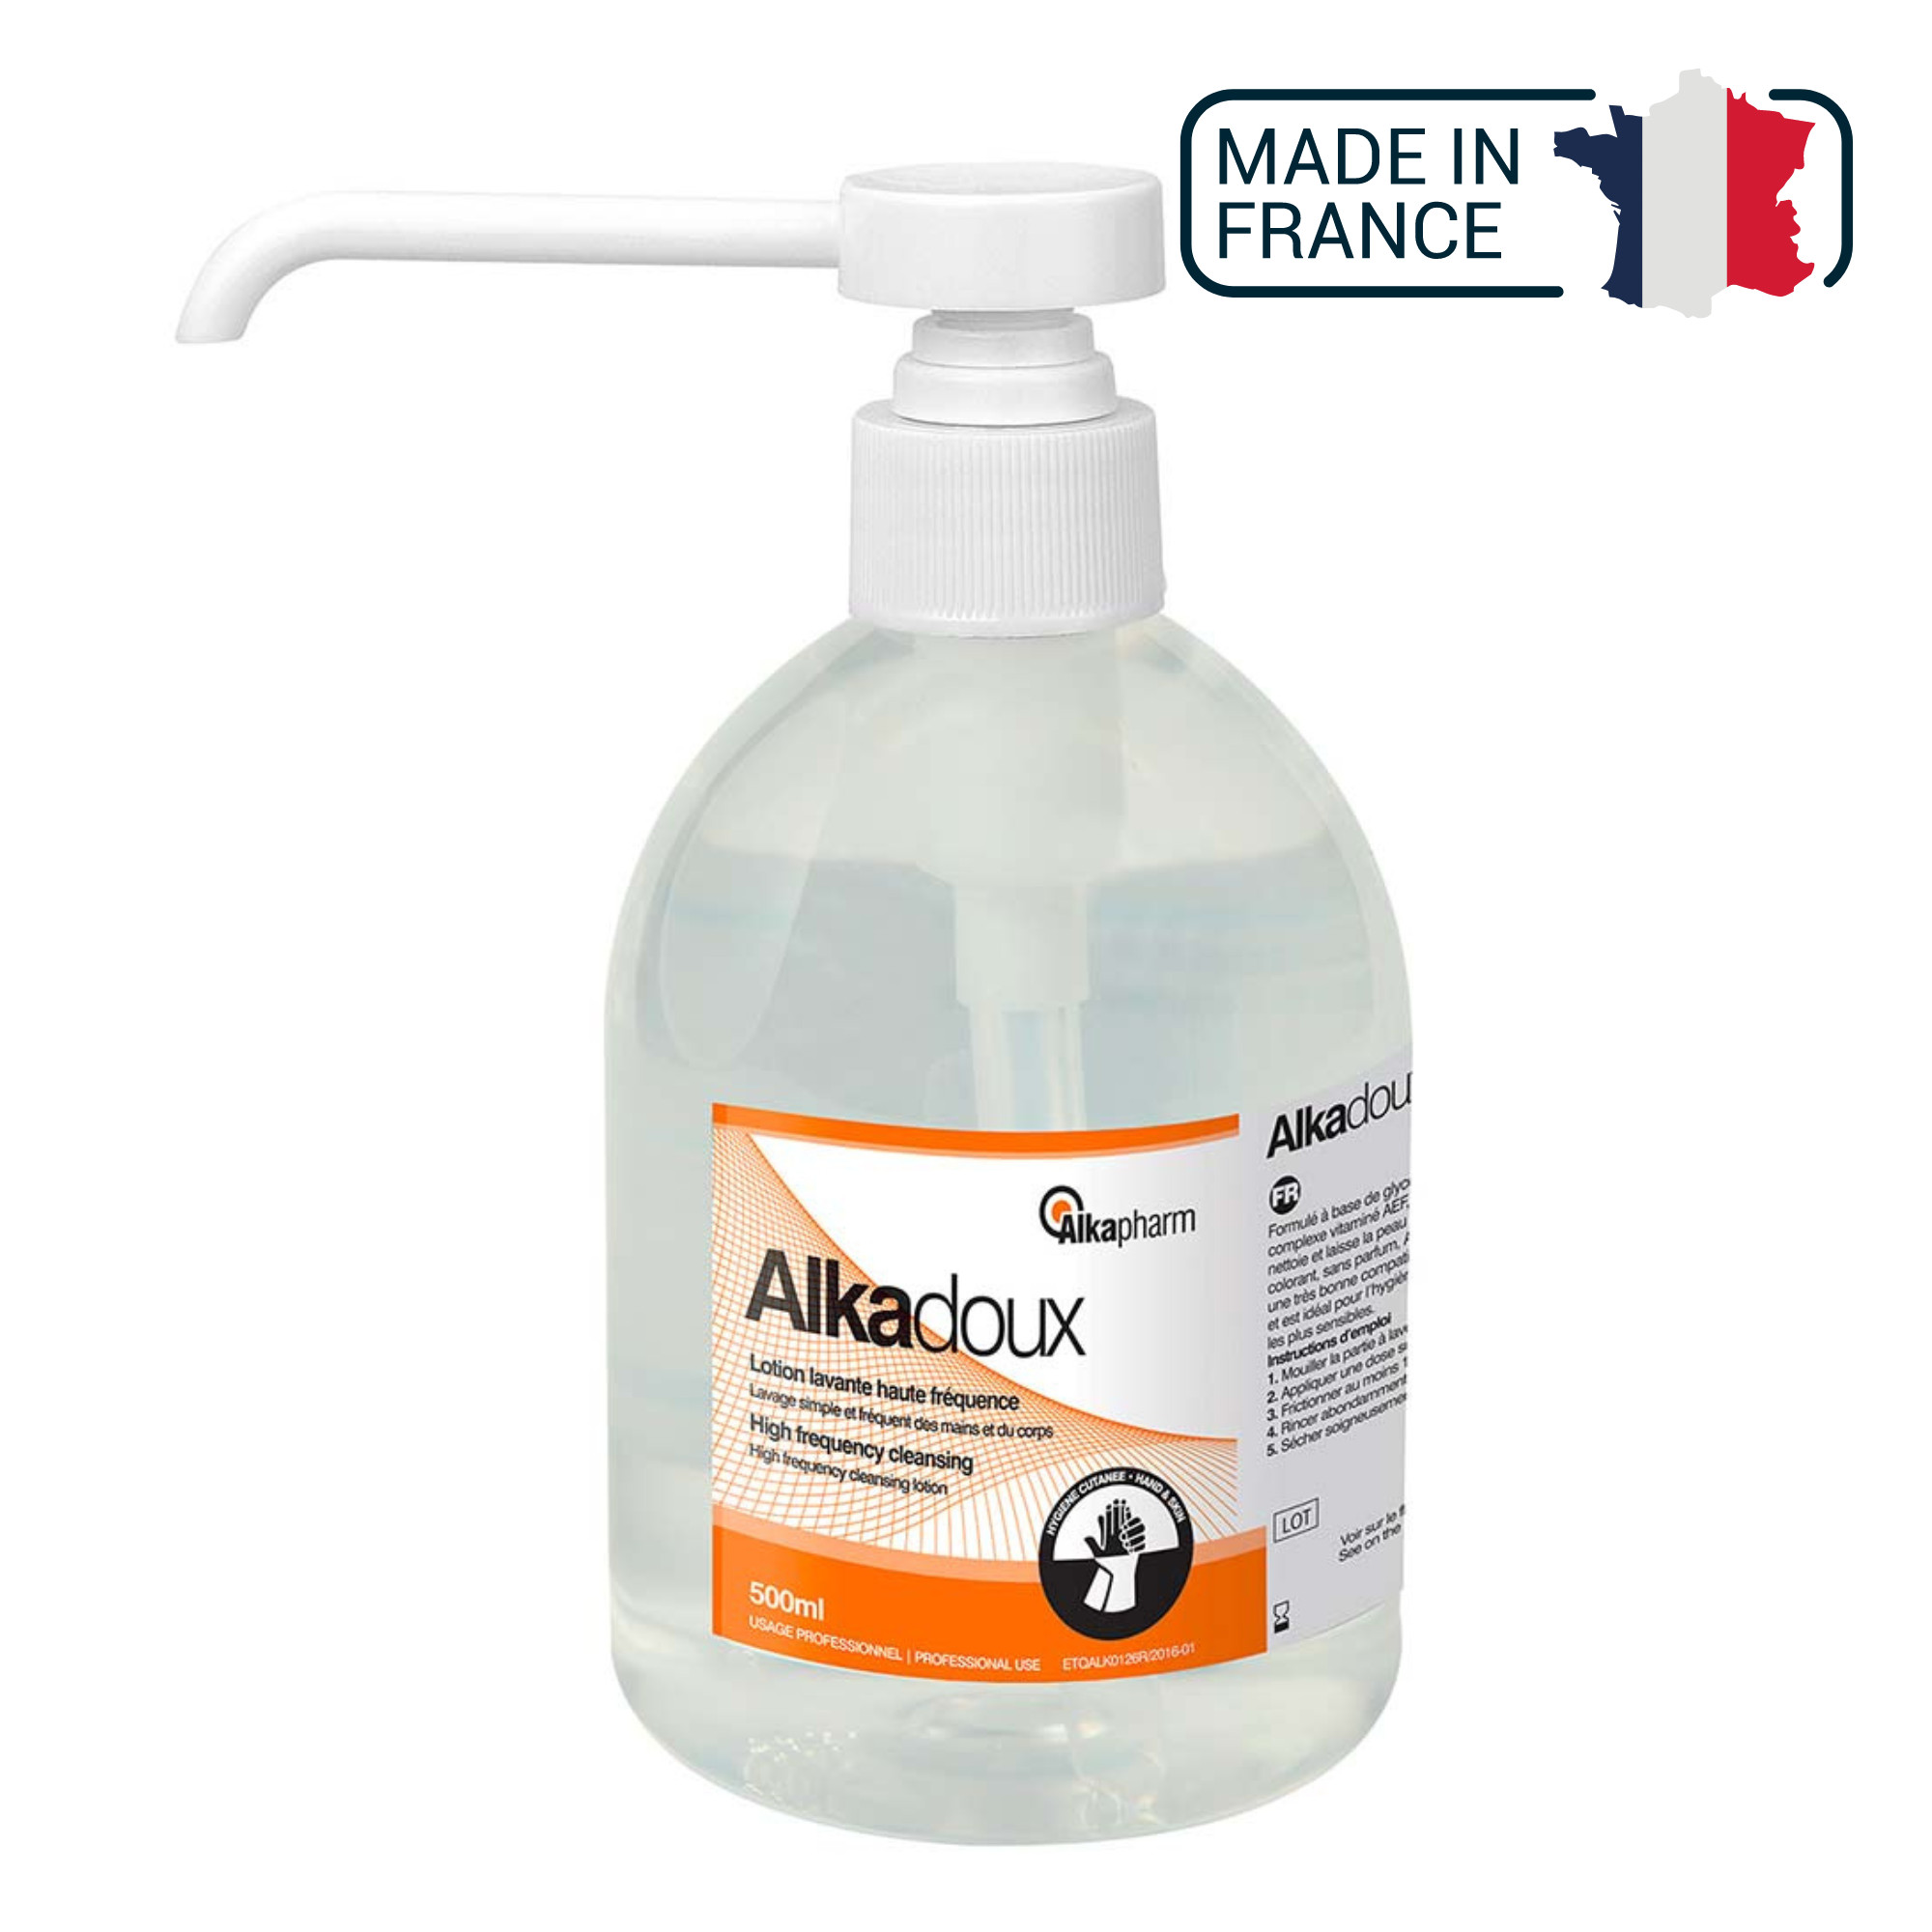 Alkadoux - Lotion lavante haute fréquence à pH neutre - Flacon pompe - 500 mL - Alkapharm